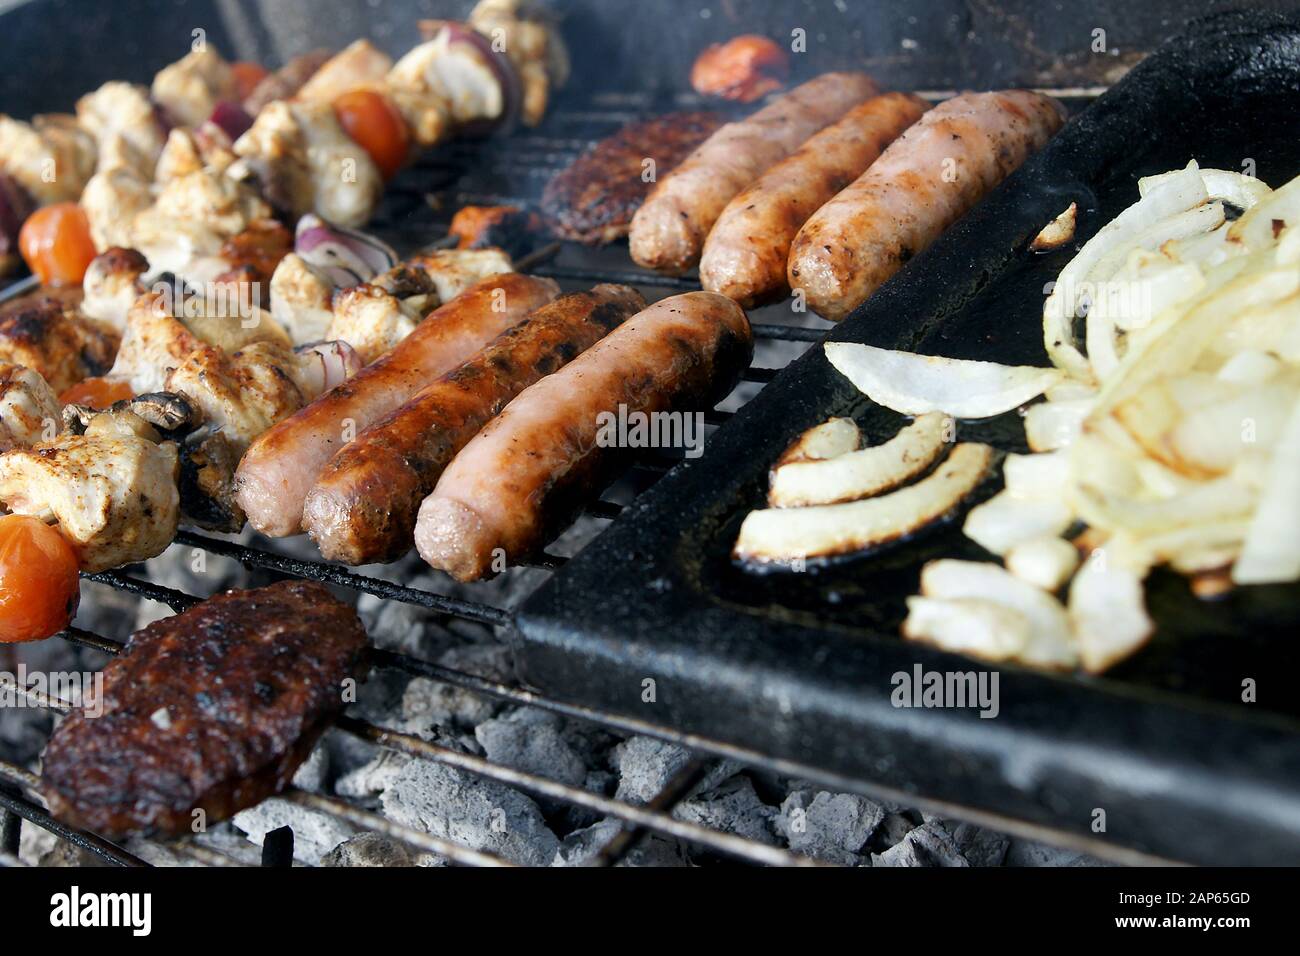 يوم السبت قس australian barbecue -